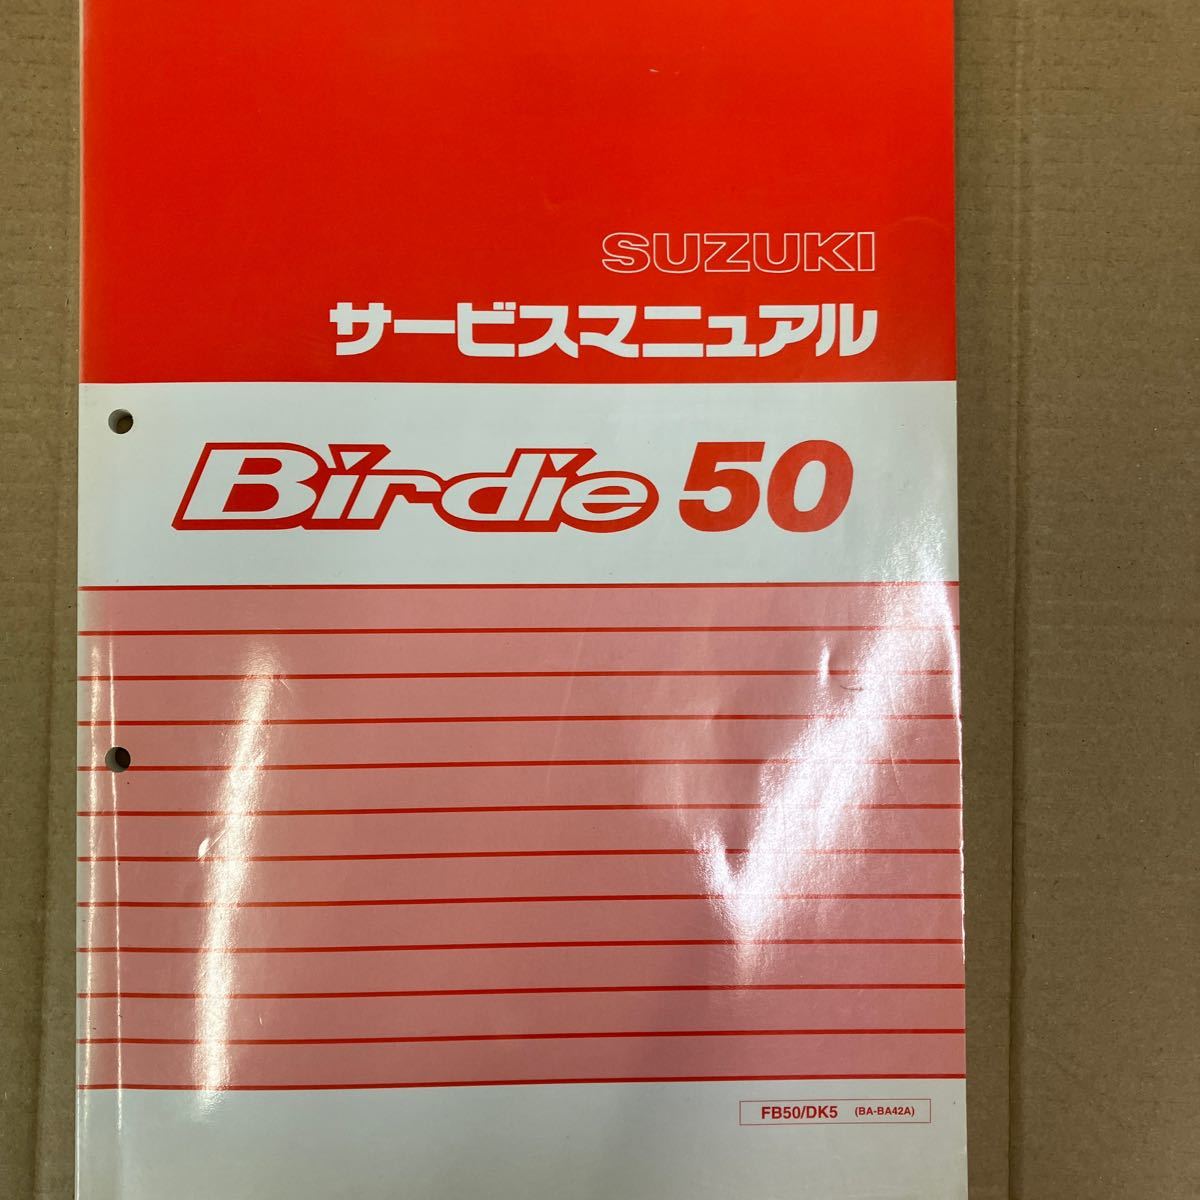 スズキ Birdie50 サービスマニュアル FB50/DK5 (BA-BA42A)の画像1